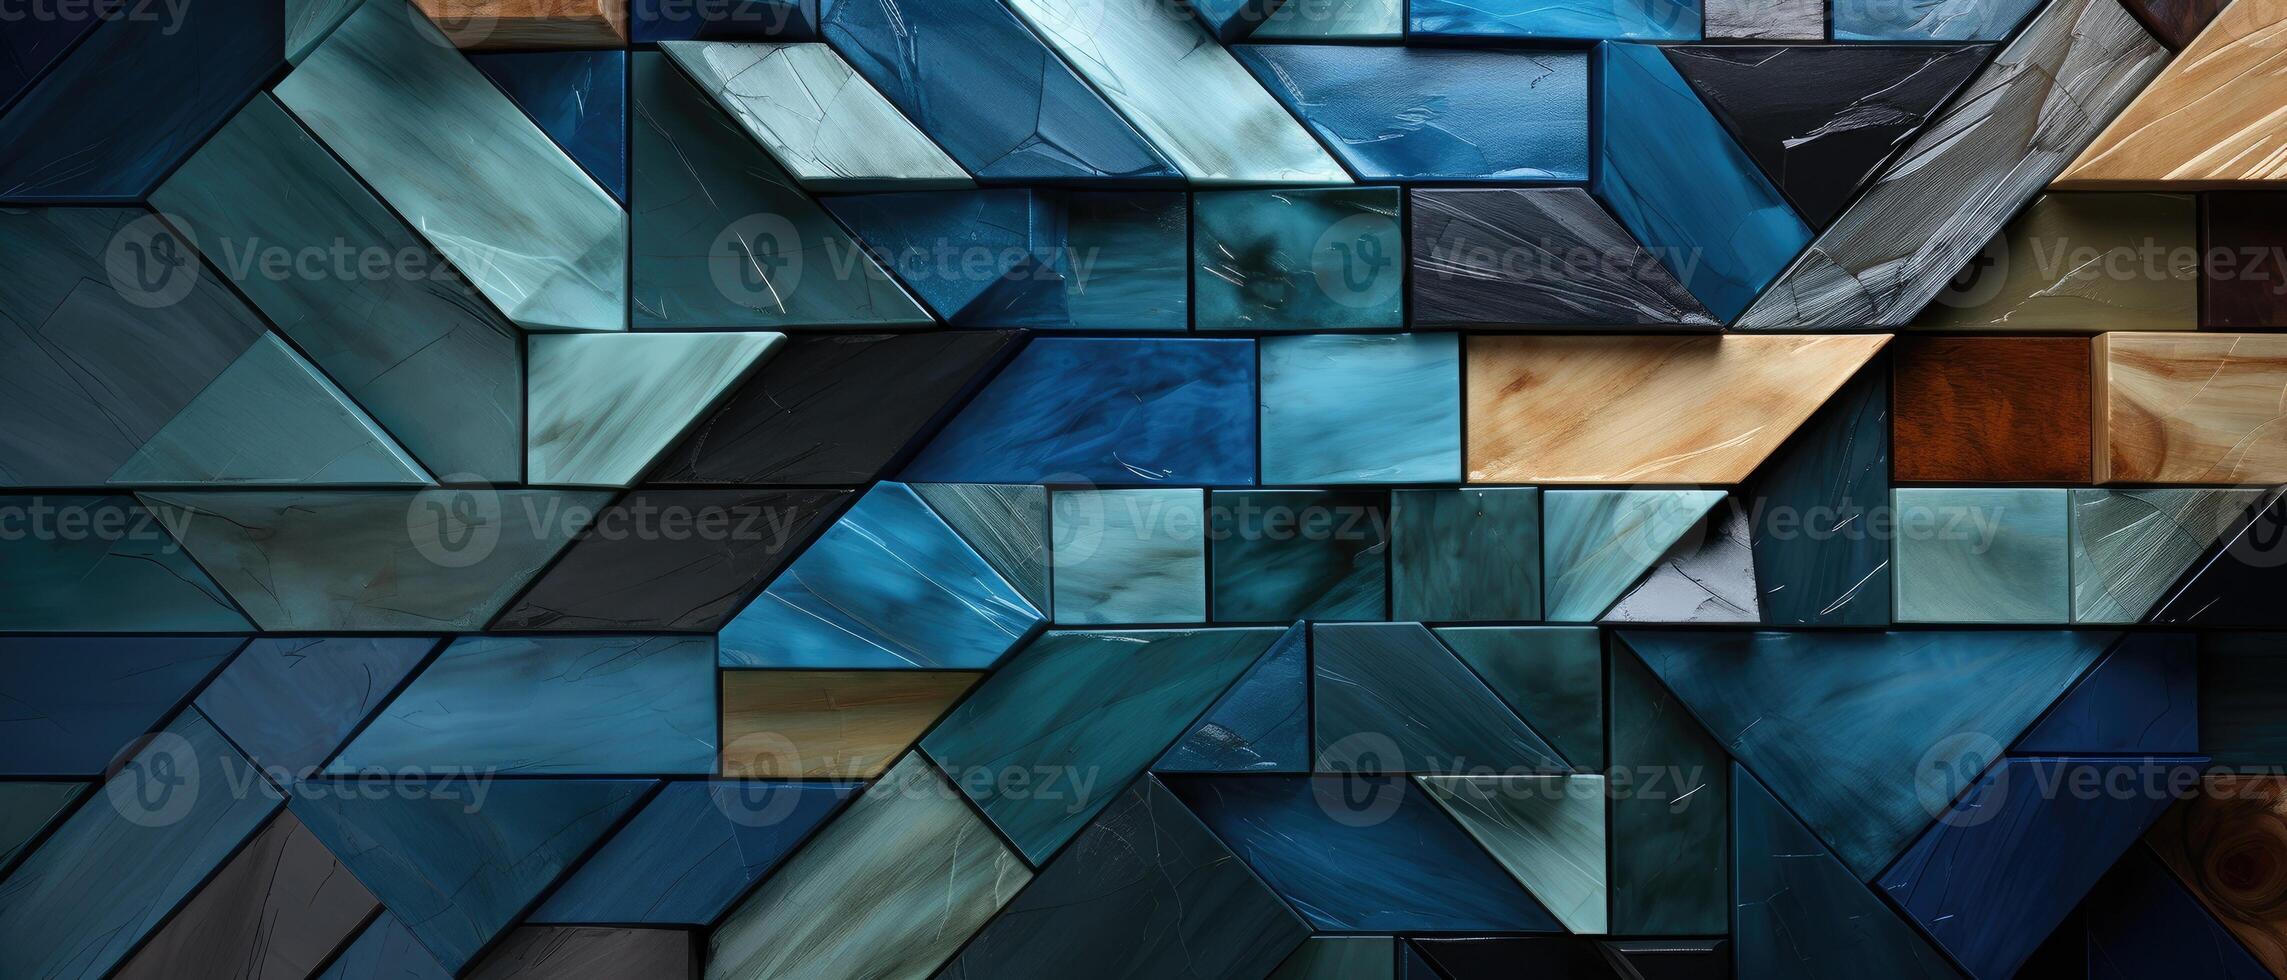 ai gerado cativante abstrato textura exibindo lustroso azul de madeira envidraçado deco mosaico azulejos, adicionando glamour para qualquer superfície, ai gerado. foto